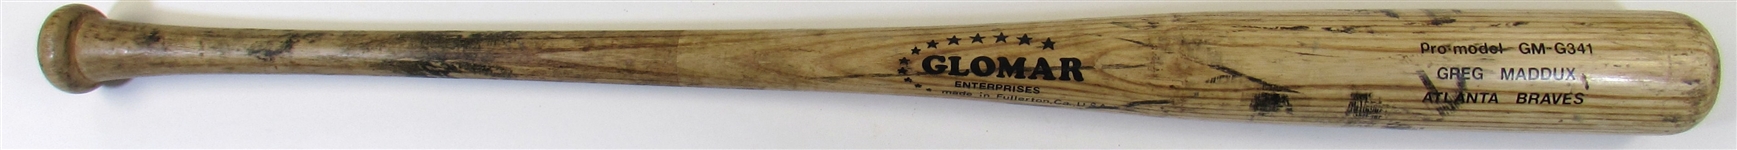 1993-95 Greg Maddux Game Used Bat PSA 9